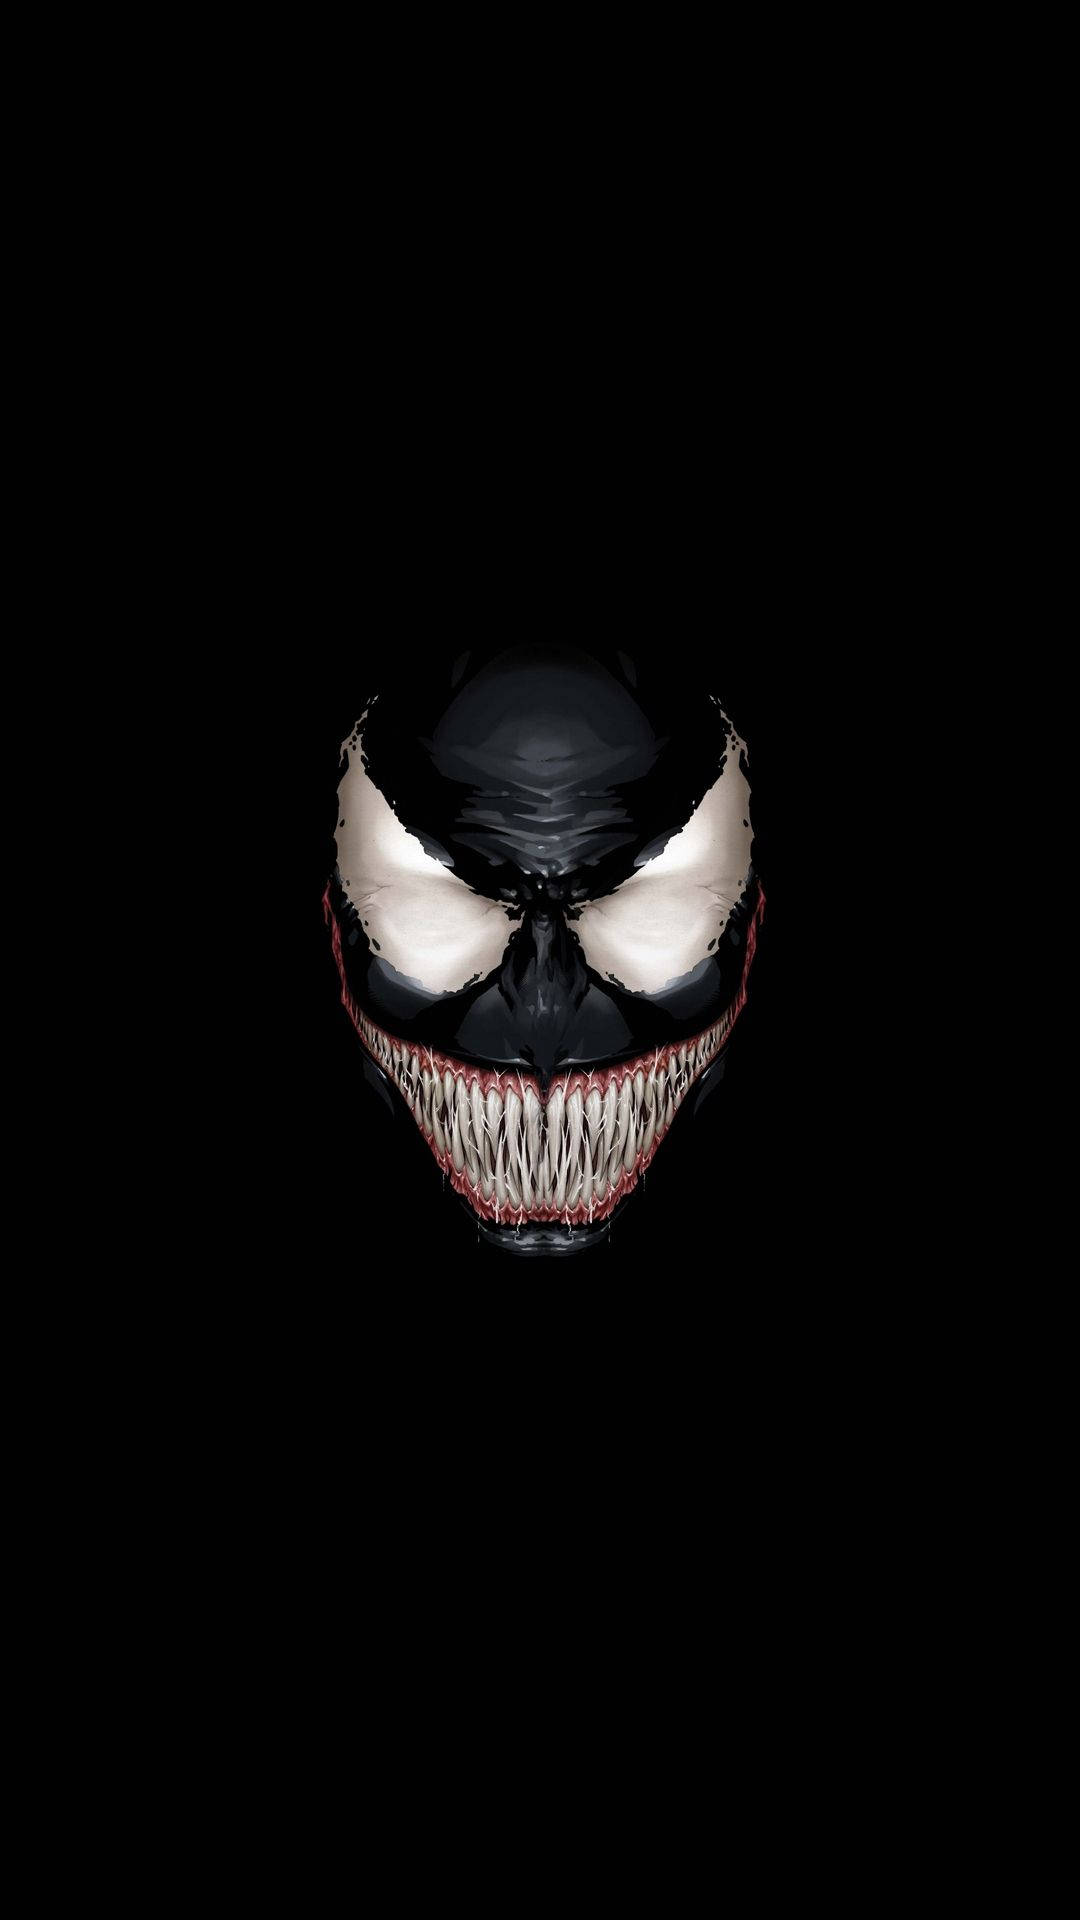 Venom From Marvel Wallpaper